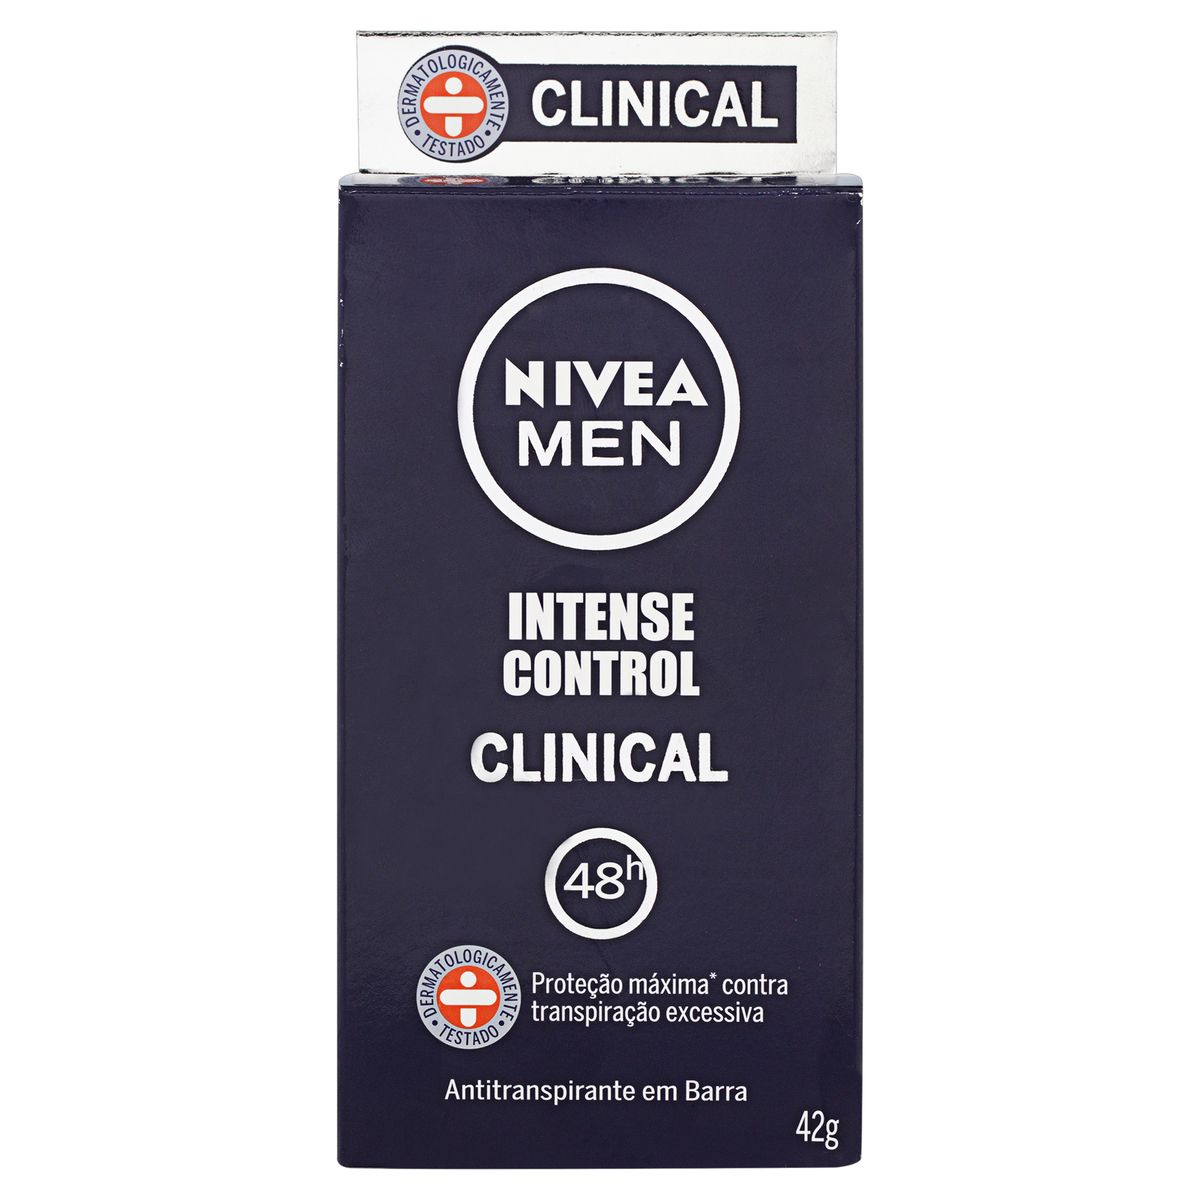 Antitranspirante Barra Nivea Men Clinical Intense Control 42g